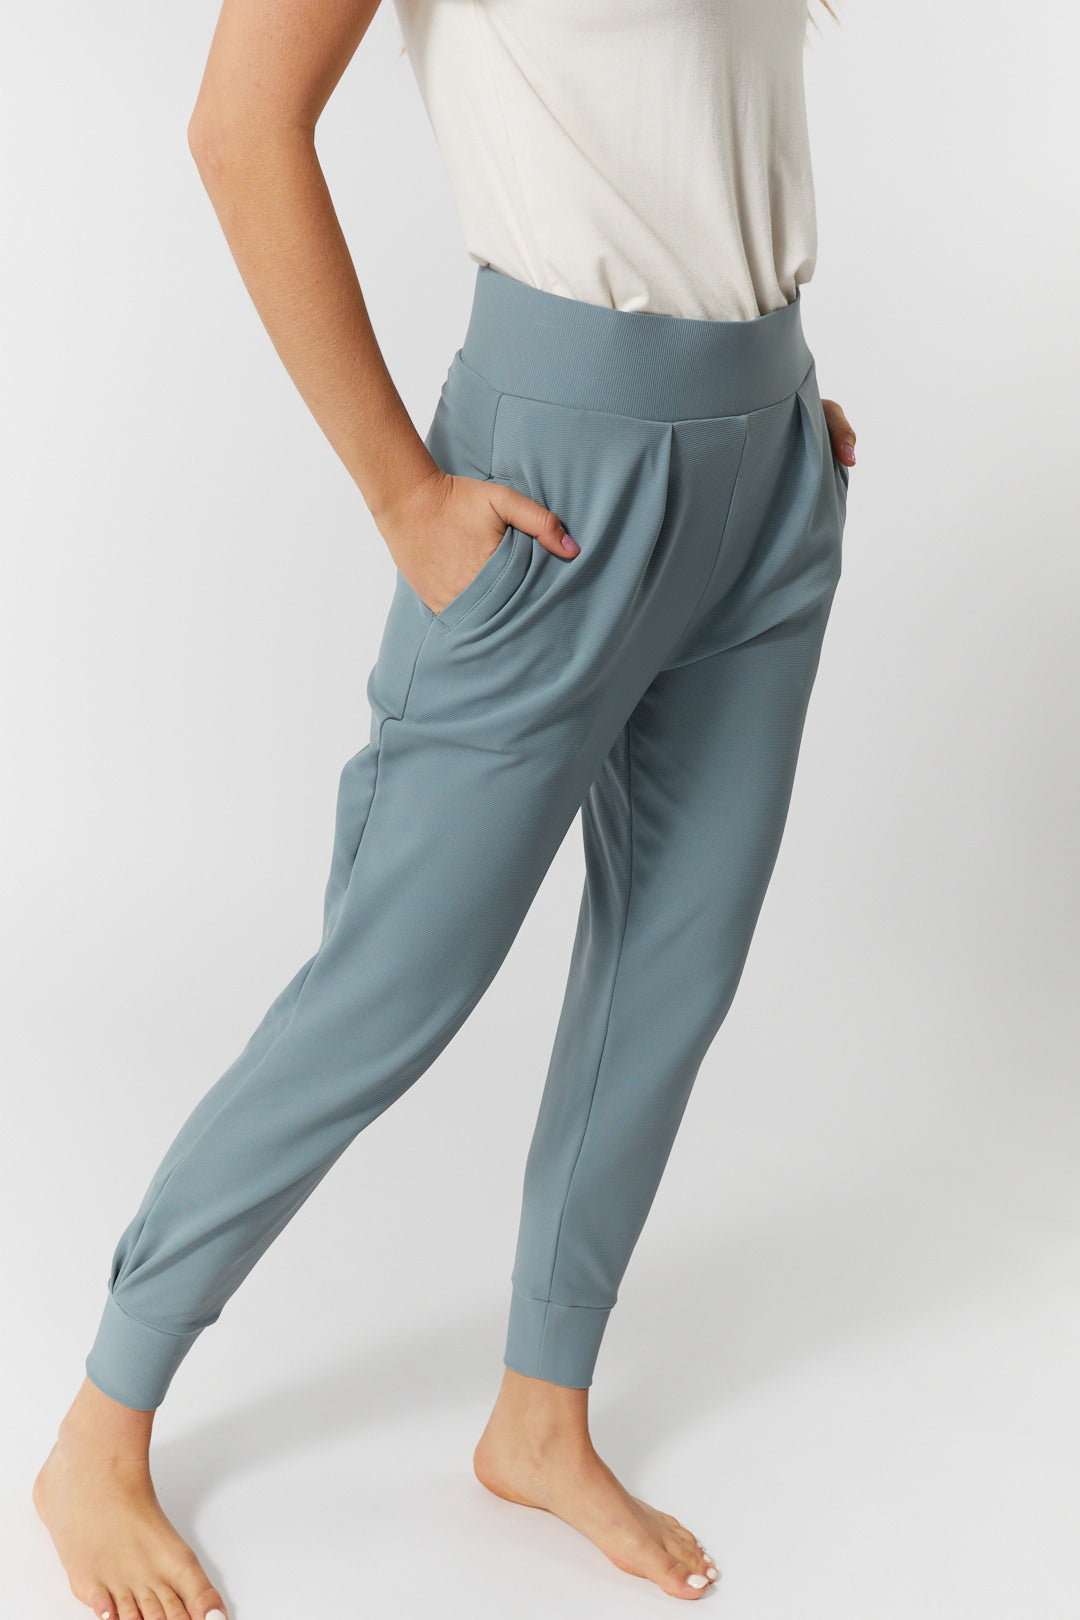 Pantalon Détente Bleu Taille Haute Pour Femme Remy JOELLE, 44% OFF